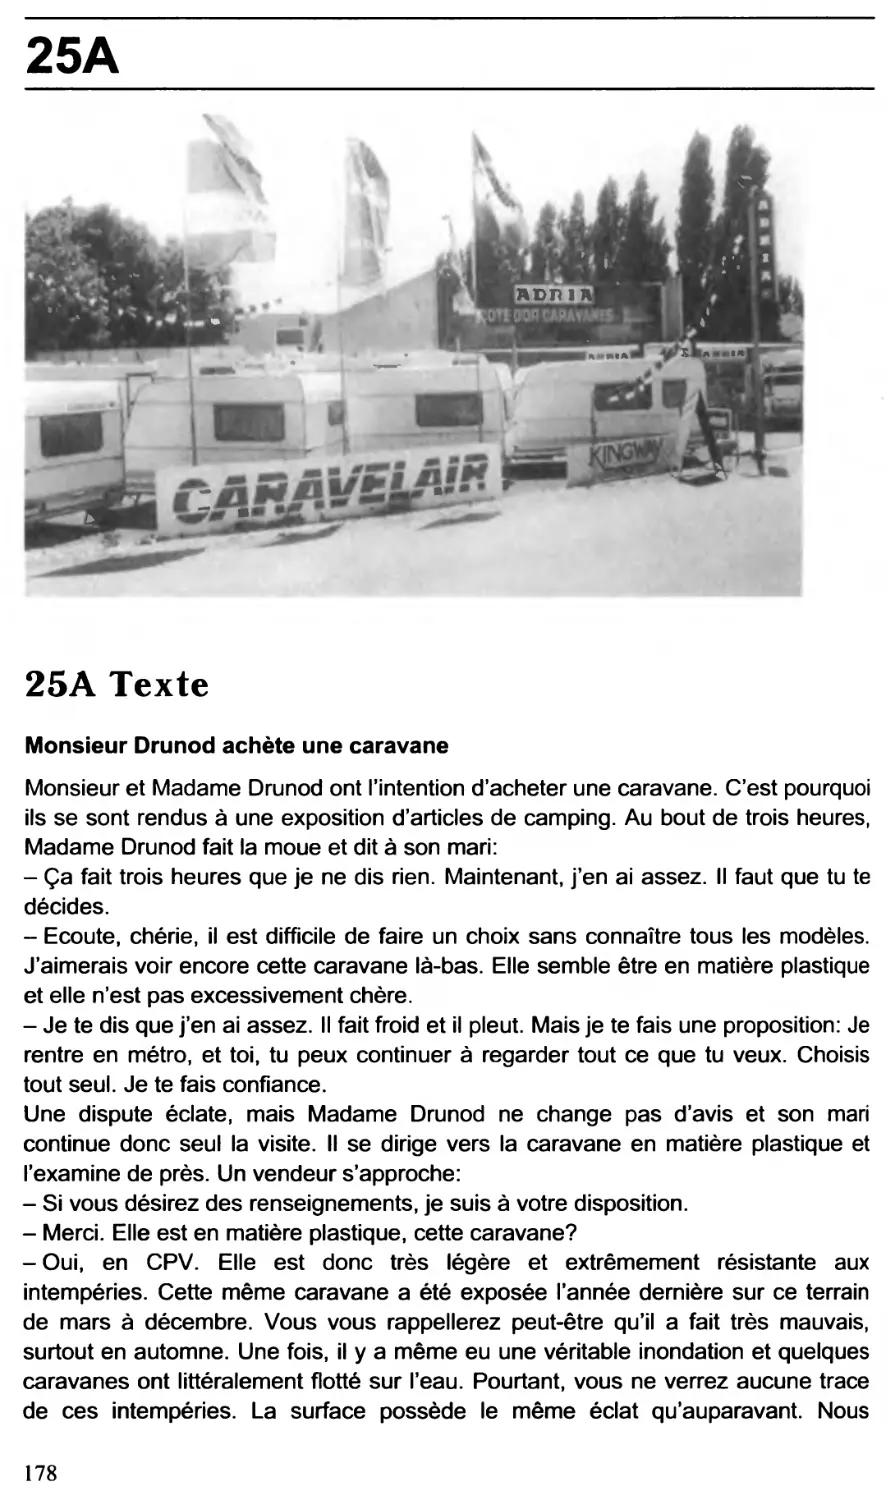 25: Monsieur Drunod achète une caravane